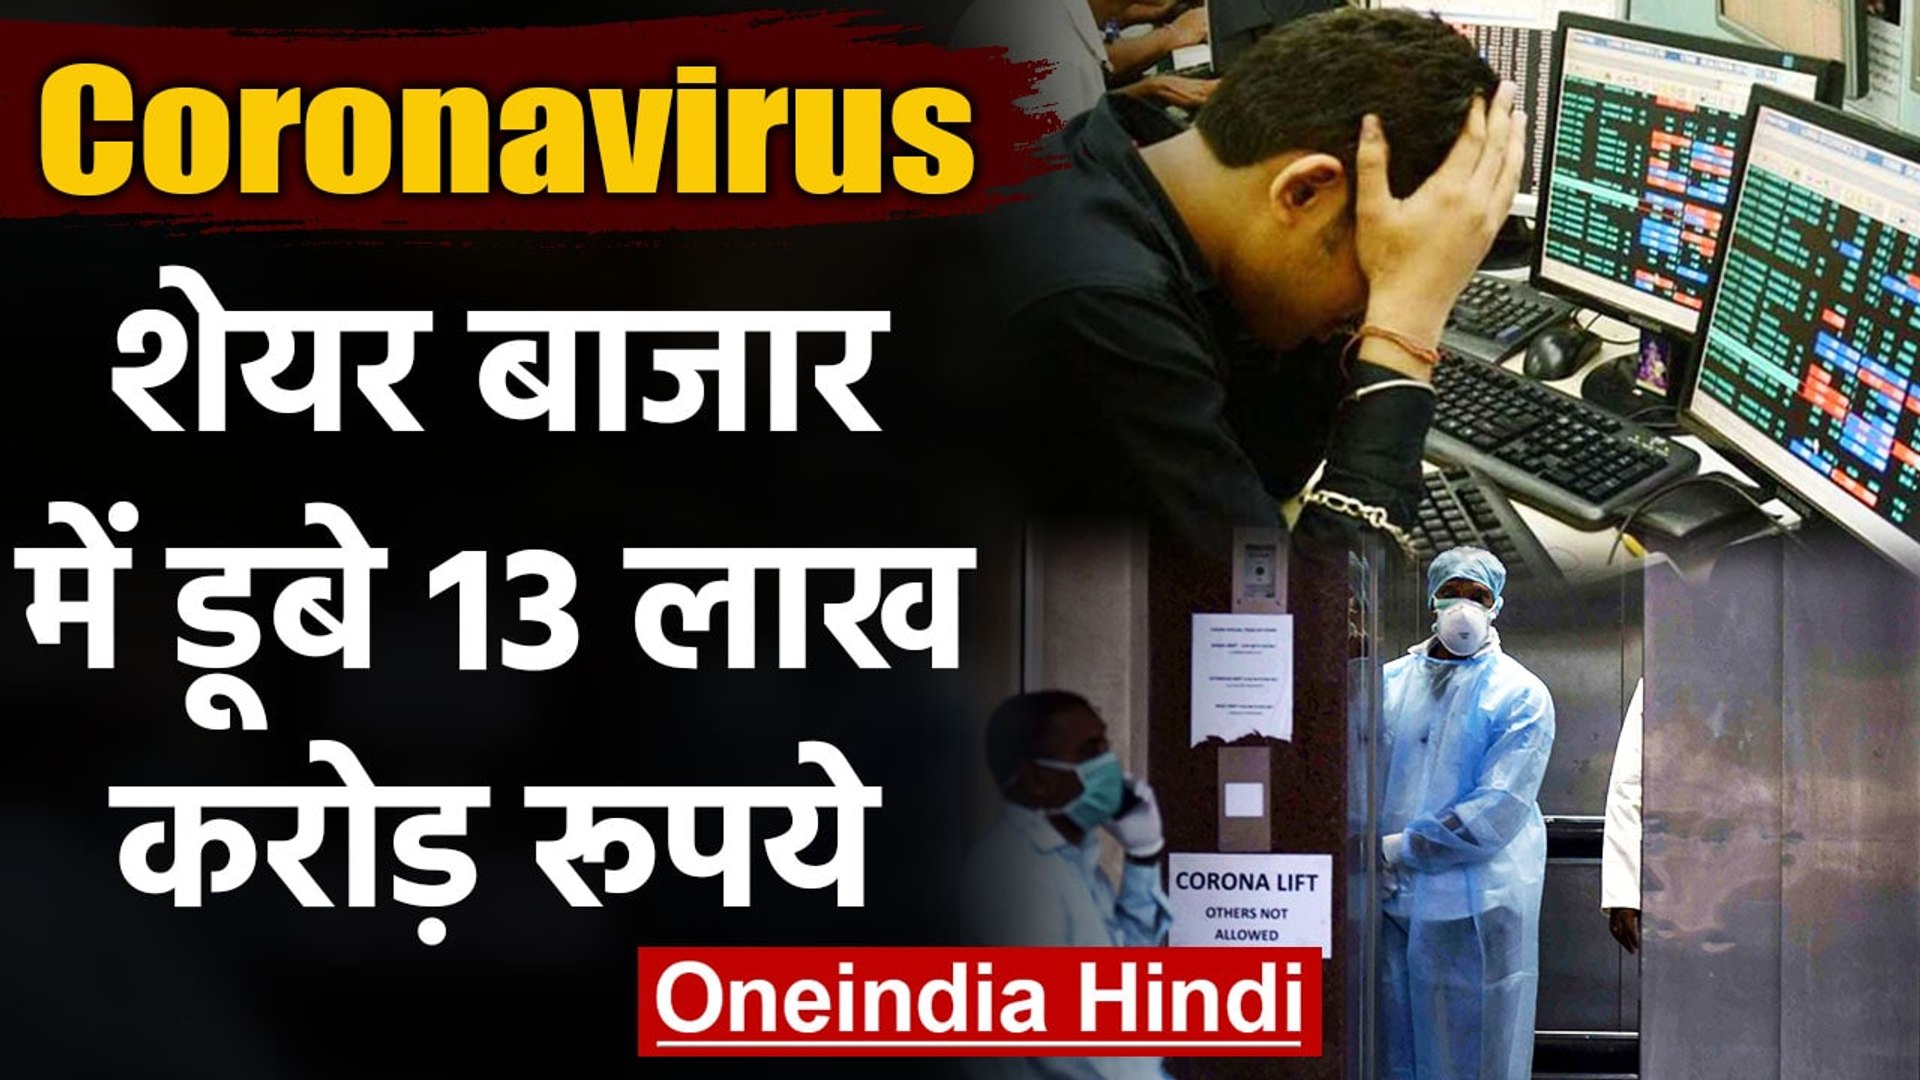 Coronavirus ने उड़ा दी Investors की नींद, India में डूब गए 13 Lakh Crores रुपये |वनइंडिया हिंदी